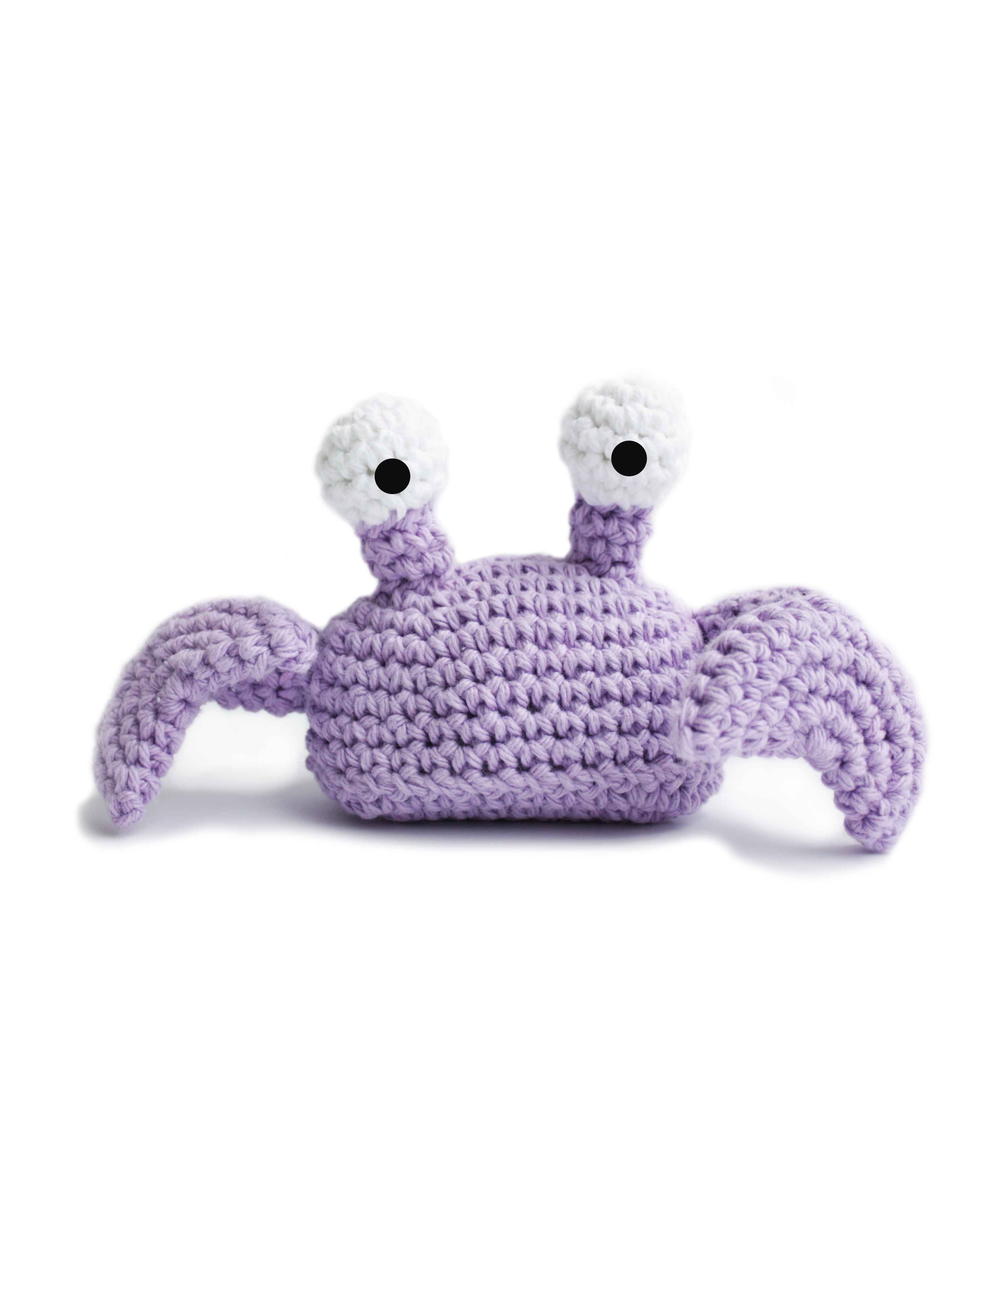 Cute Crochet Amigurumi Crab, cute crochet, crochet amigurumi, crochet patte...